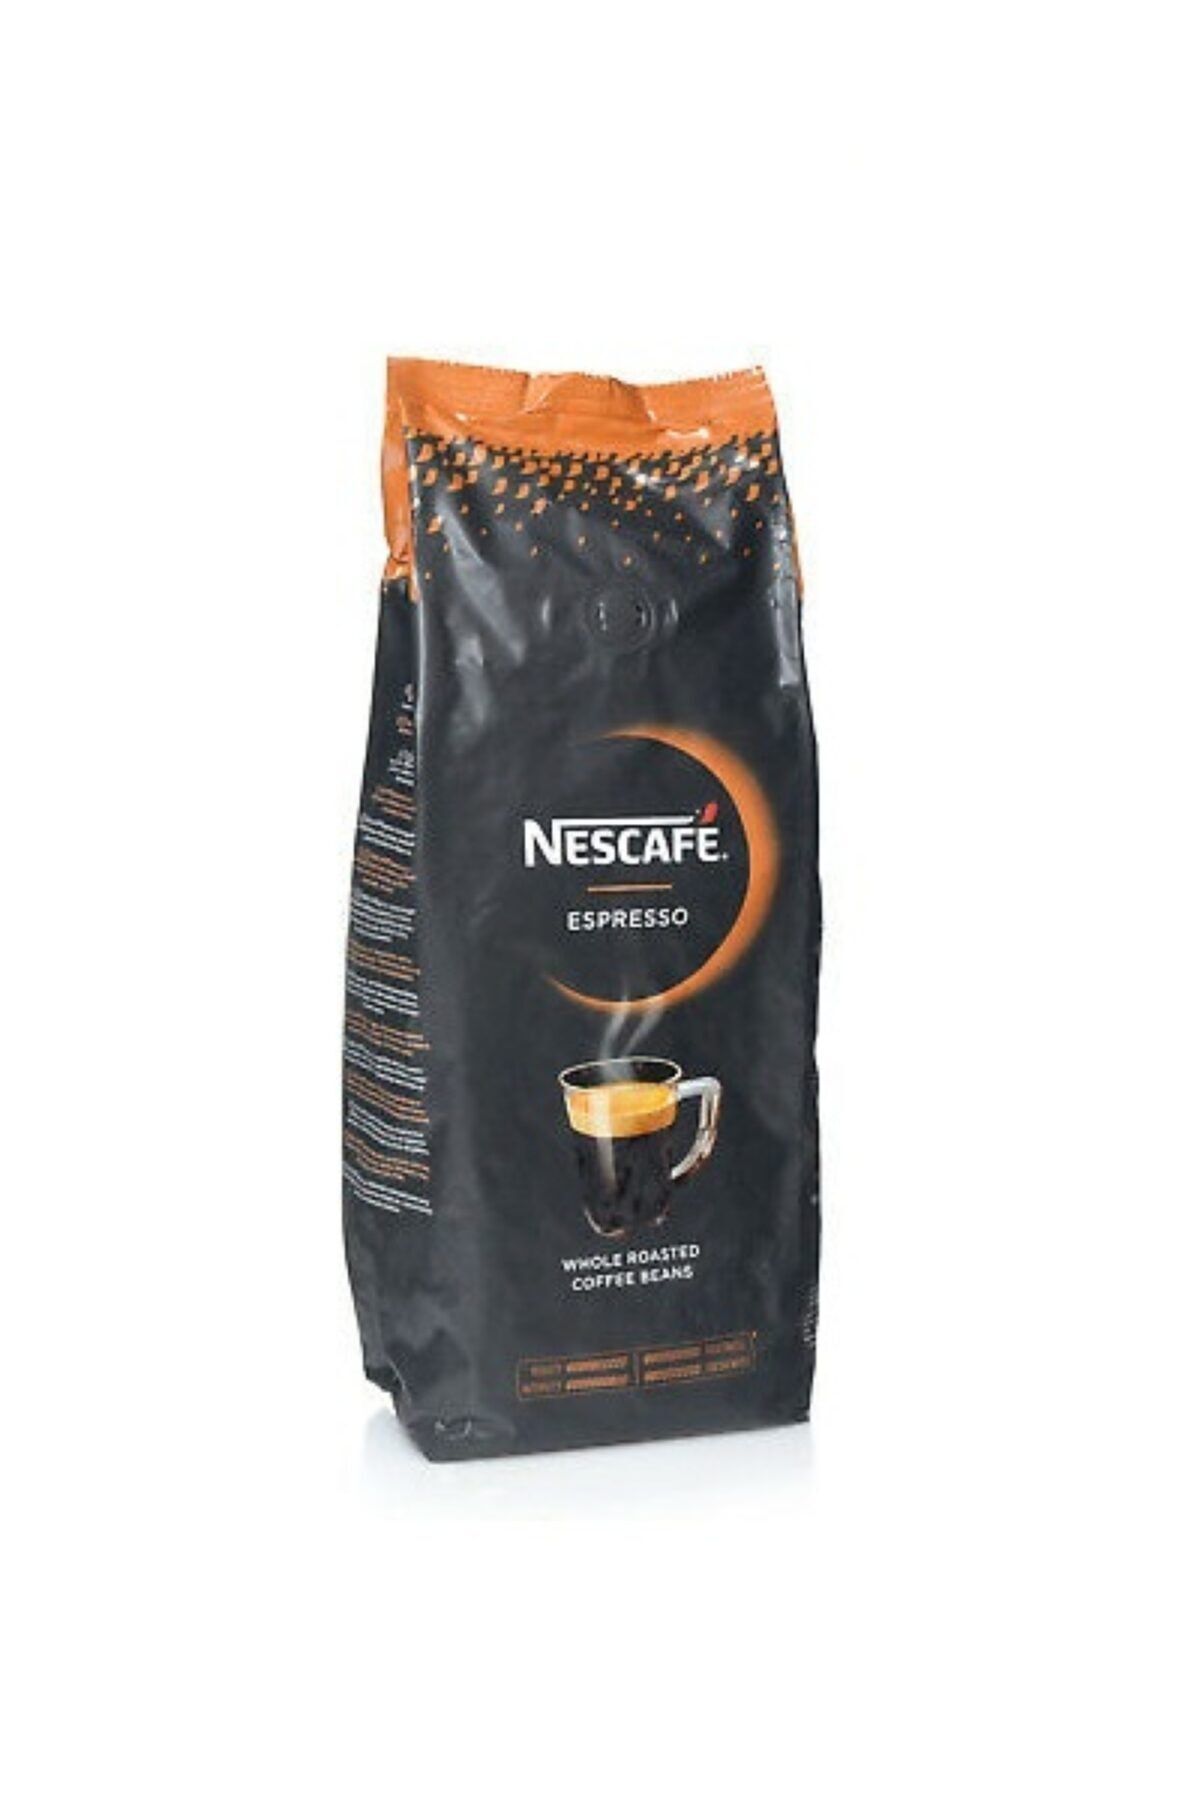 Купить зерновой кофе для кофемашины недорого. Кофе Нескафе эспрессо 1 кг в зернах. Кофе Нескафе excellent в зернах. Кофе Нескафе в зернах 1 кг. Кофе зерновой Нескафе Экселент 1 кг.